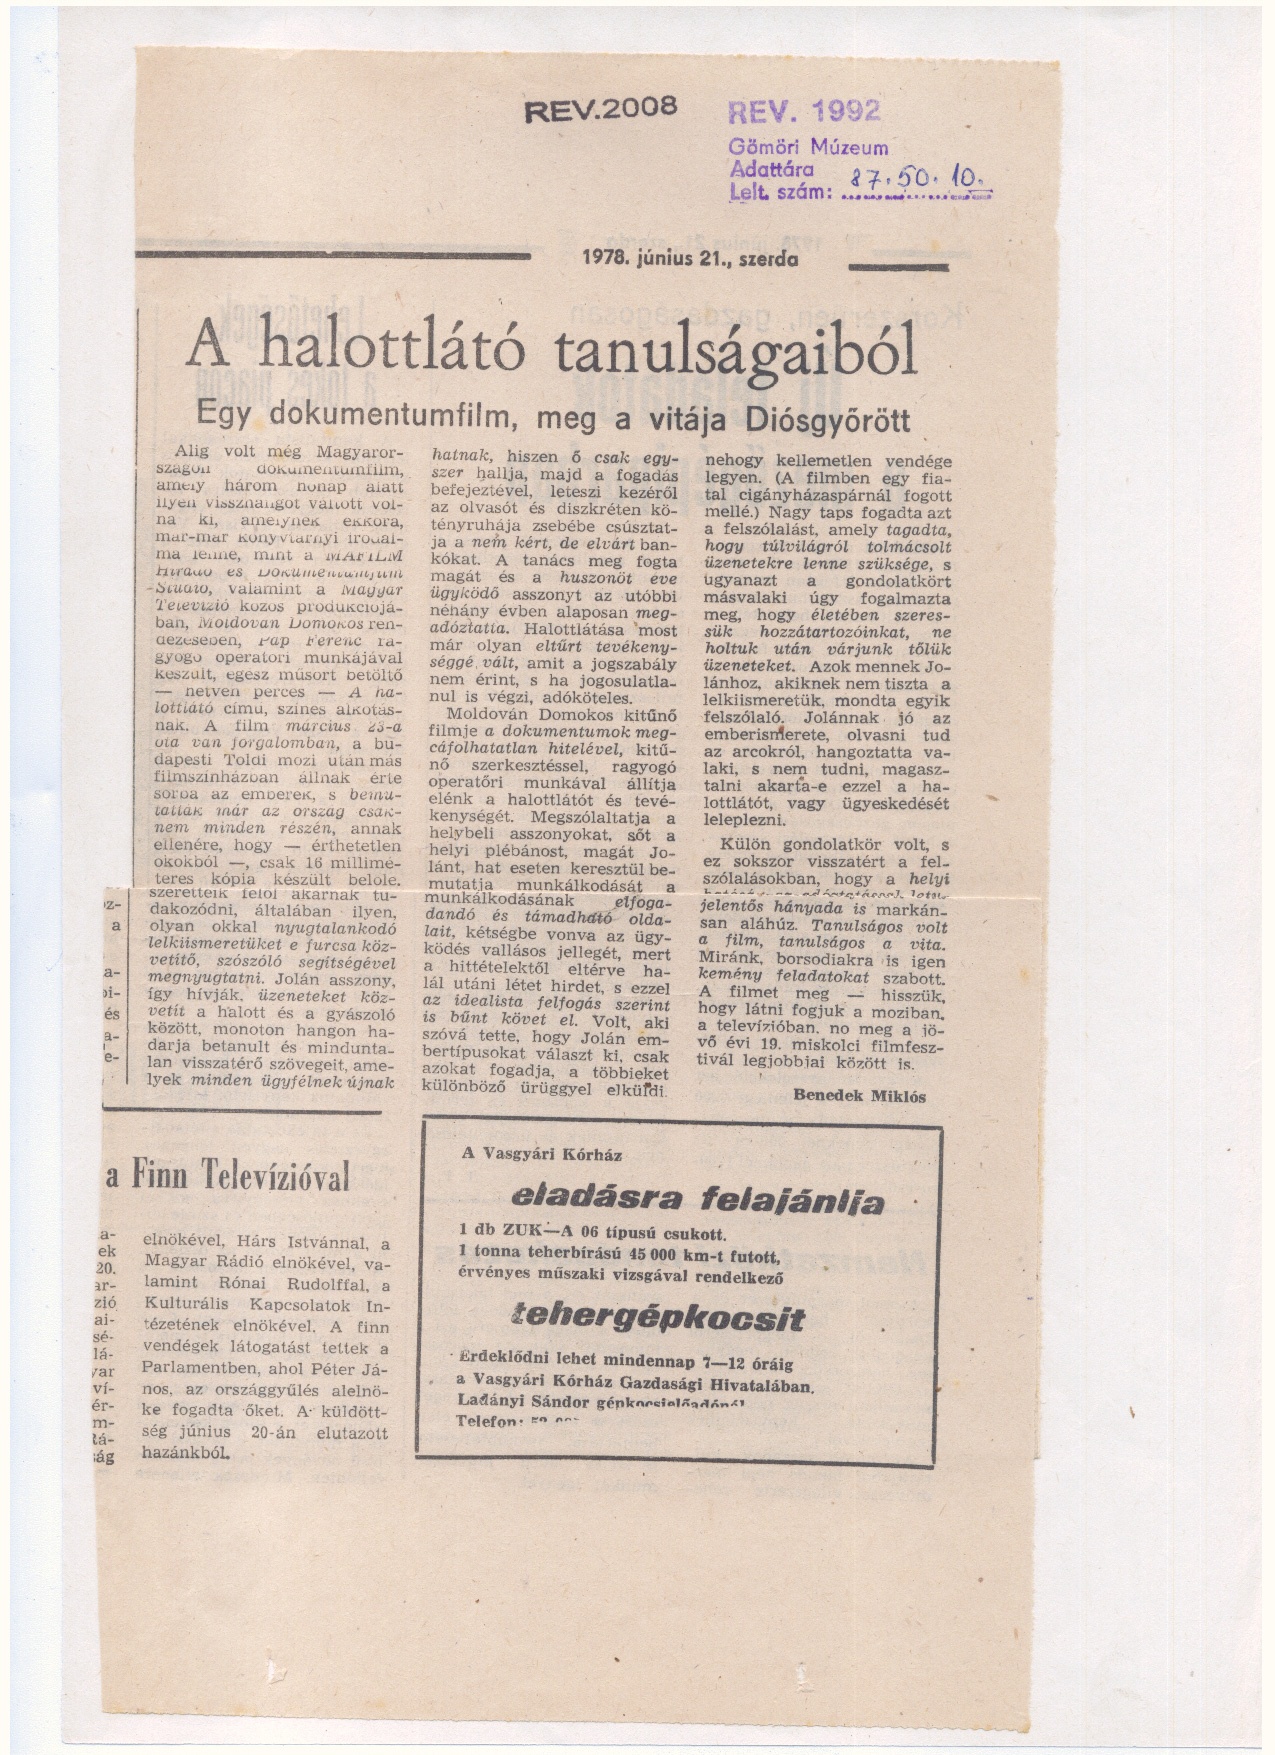 Lapkivágás /Észak Magyarország 1978 június 21.?/ 1978. (Gömöri Múzeum, Putnok CC BY-NC-SA)